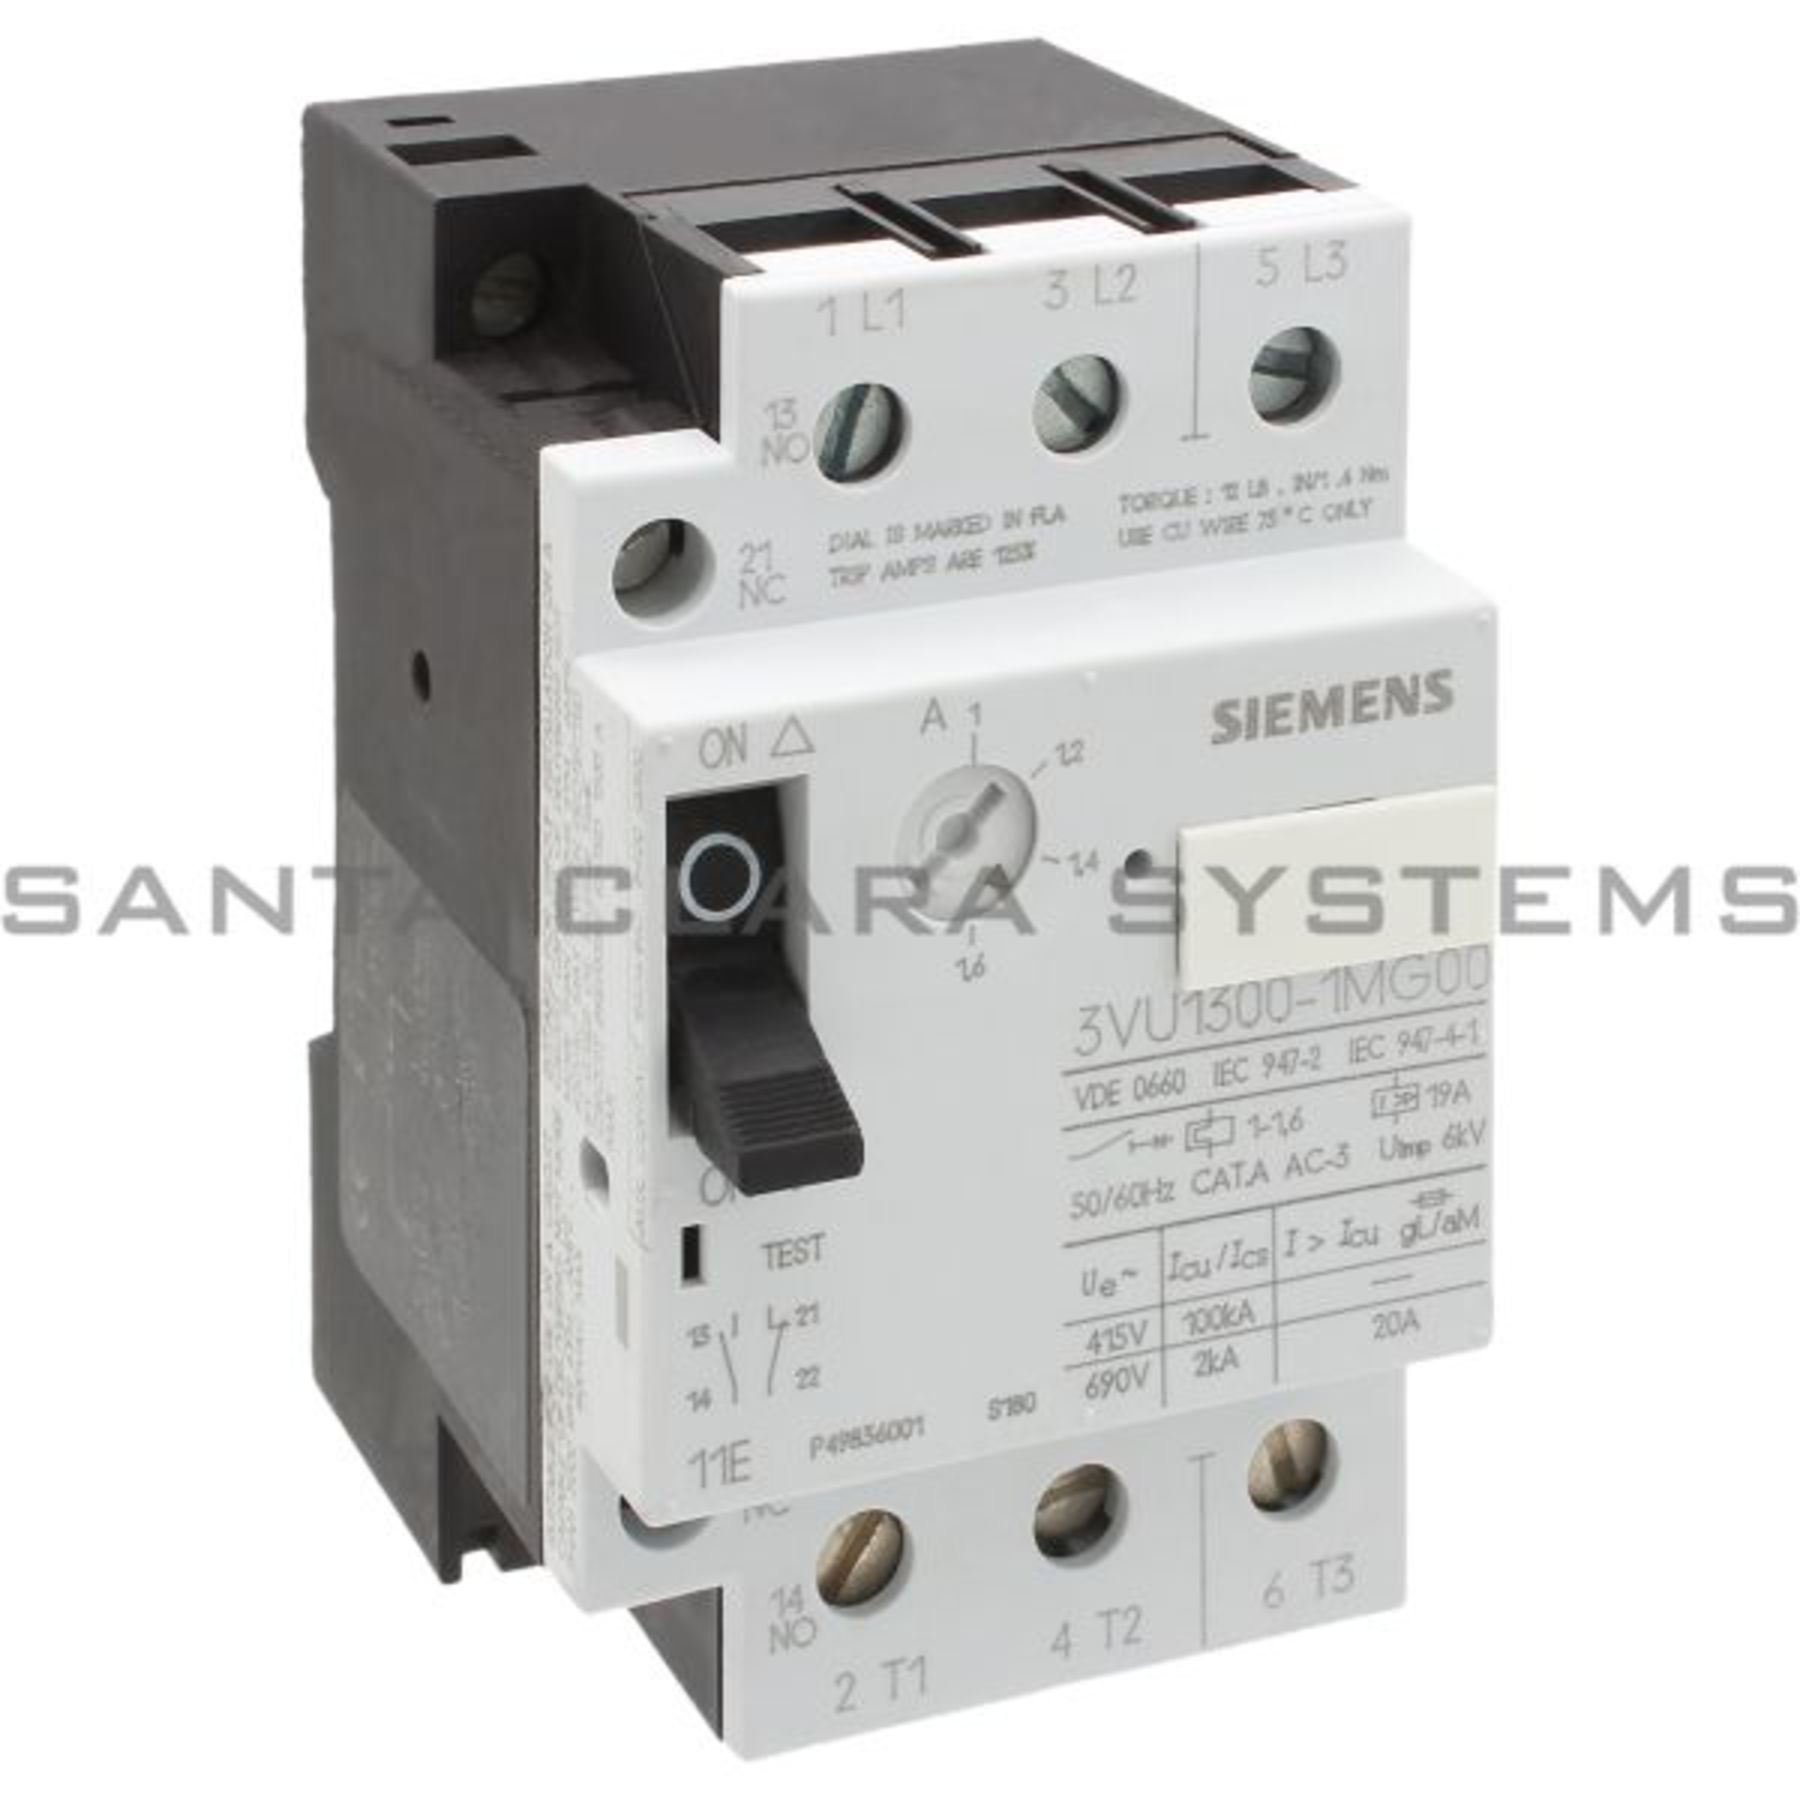 Siemens 3vu1300-1md00 3vu1 300-1md00 Disjoncteur 0,24-0,4 A-UNUSED/Neuf dans sa boîte 